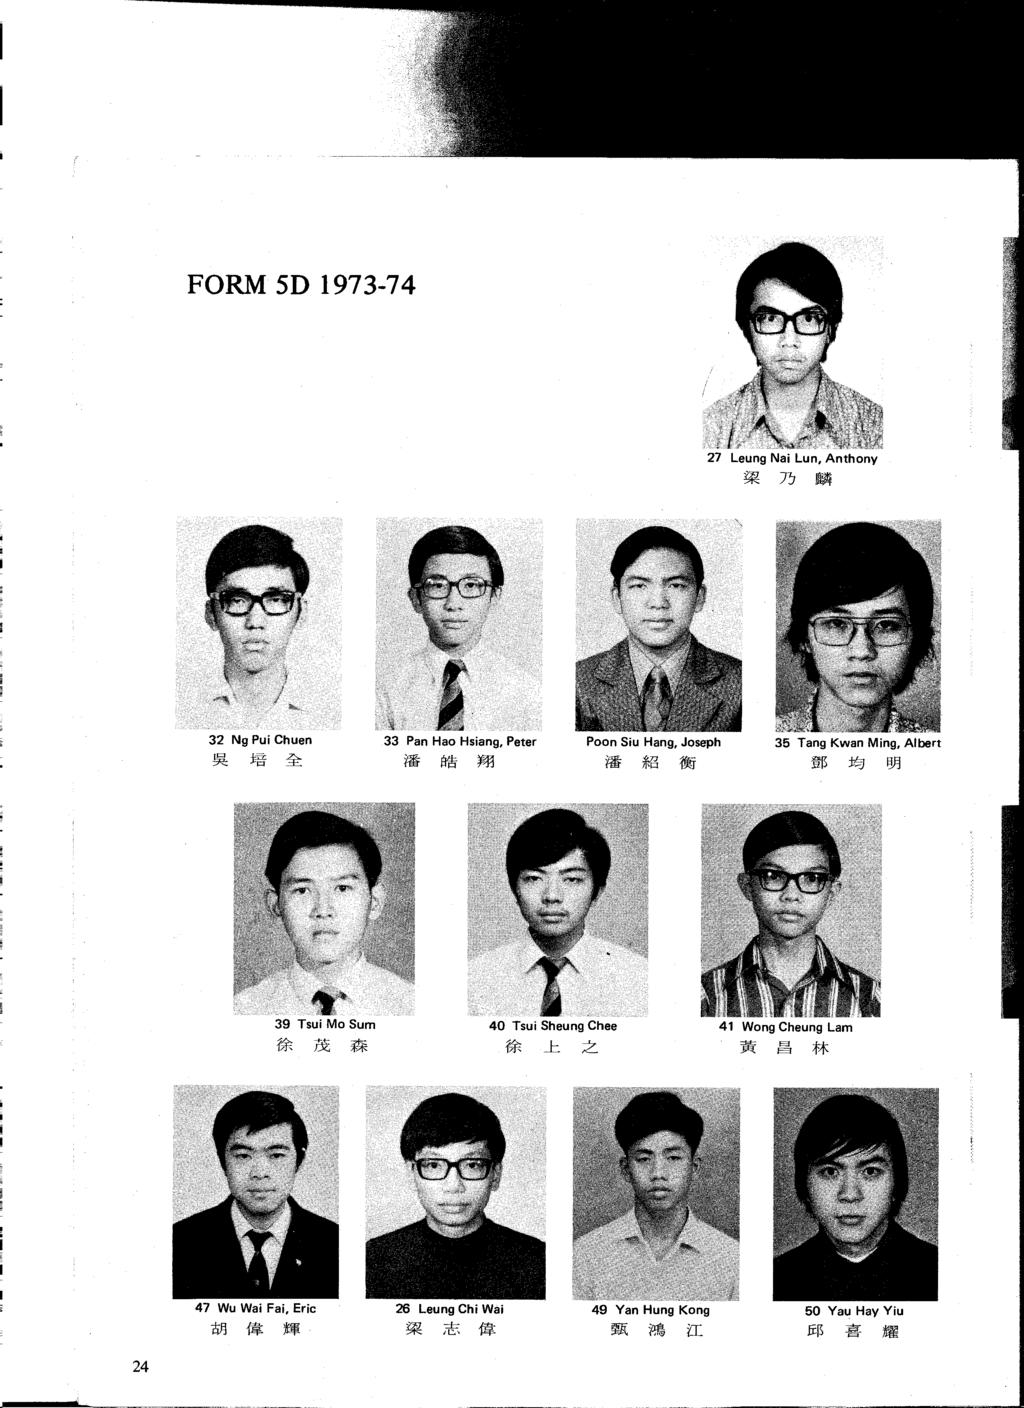 FORM 5D 1973-74 27 Leung Nai Lun, Anthony ~ 7J ~ 32 Ng Pui Chuen 33 Pan Hao Hsiang, Peter Poon Siu Hang, Joseph 35 Tang Kwan Ming, Albert 1!R: j:{f ~ l'ft!'ii!